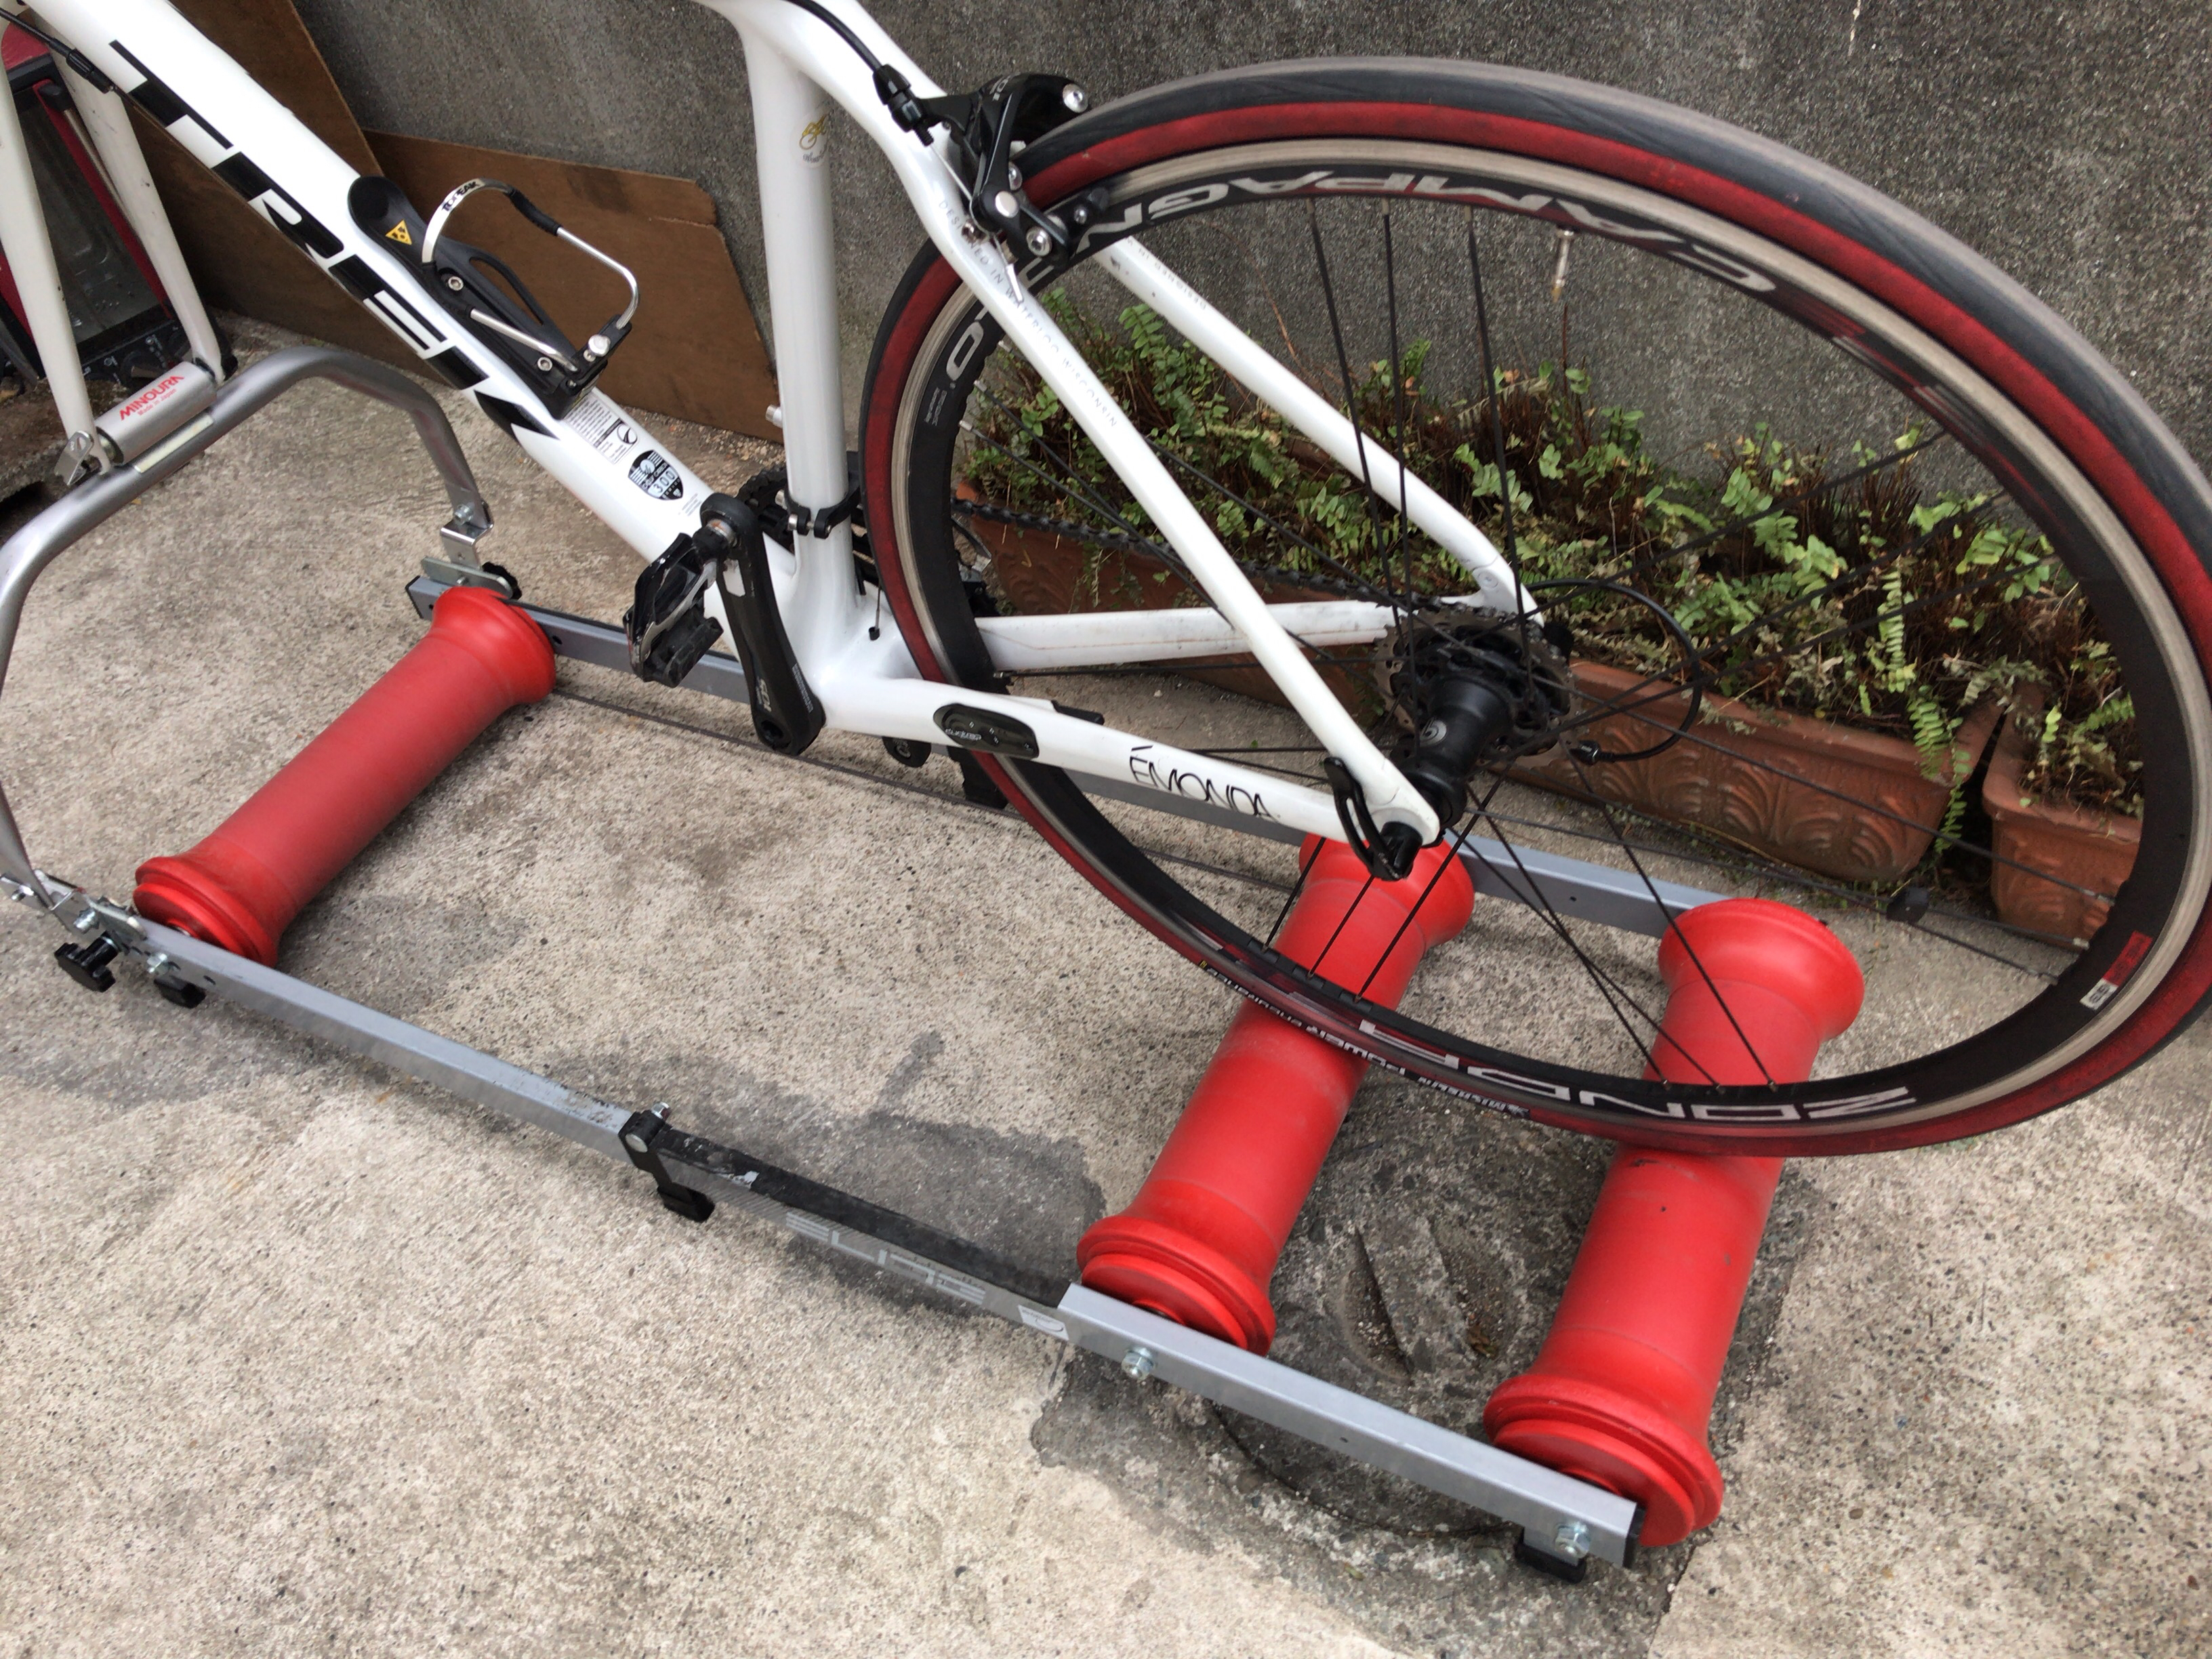 8840円 【74%OFF!】 CycleOps 三本ローラー 自転車トレーニング用